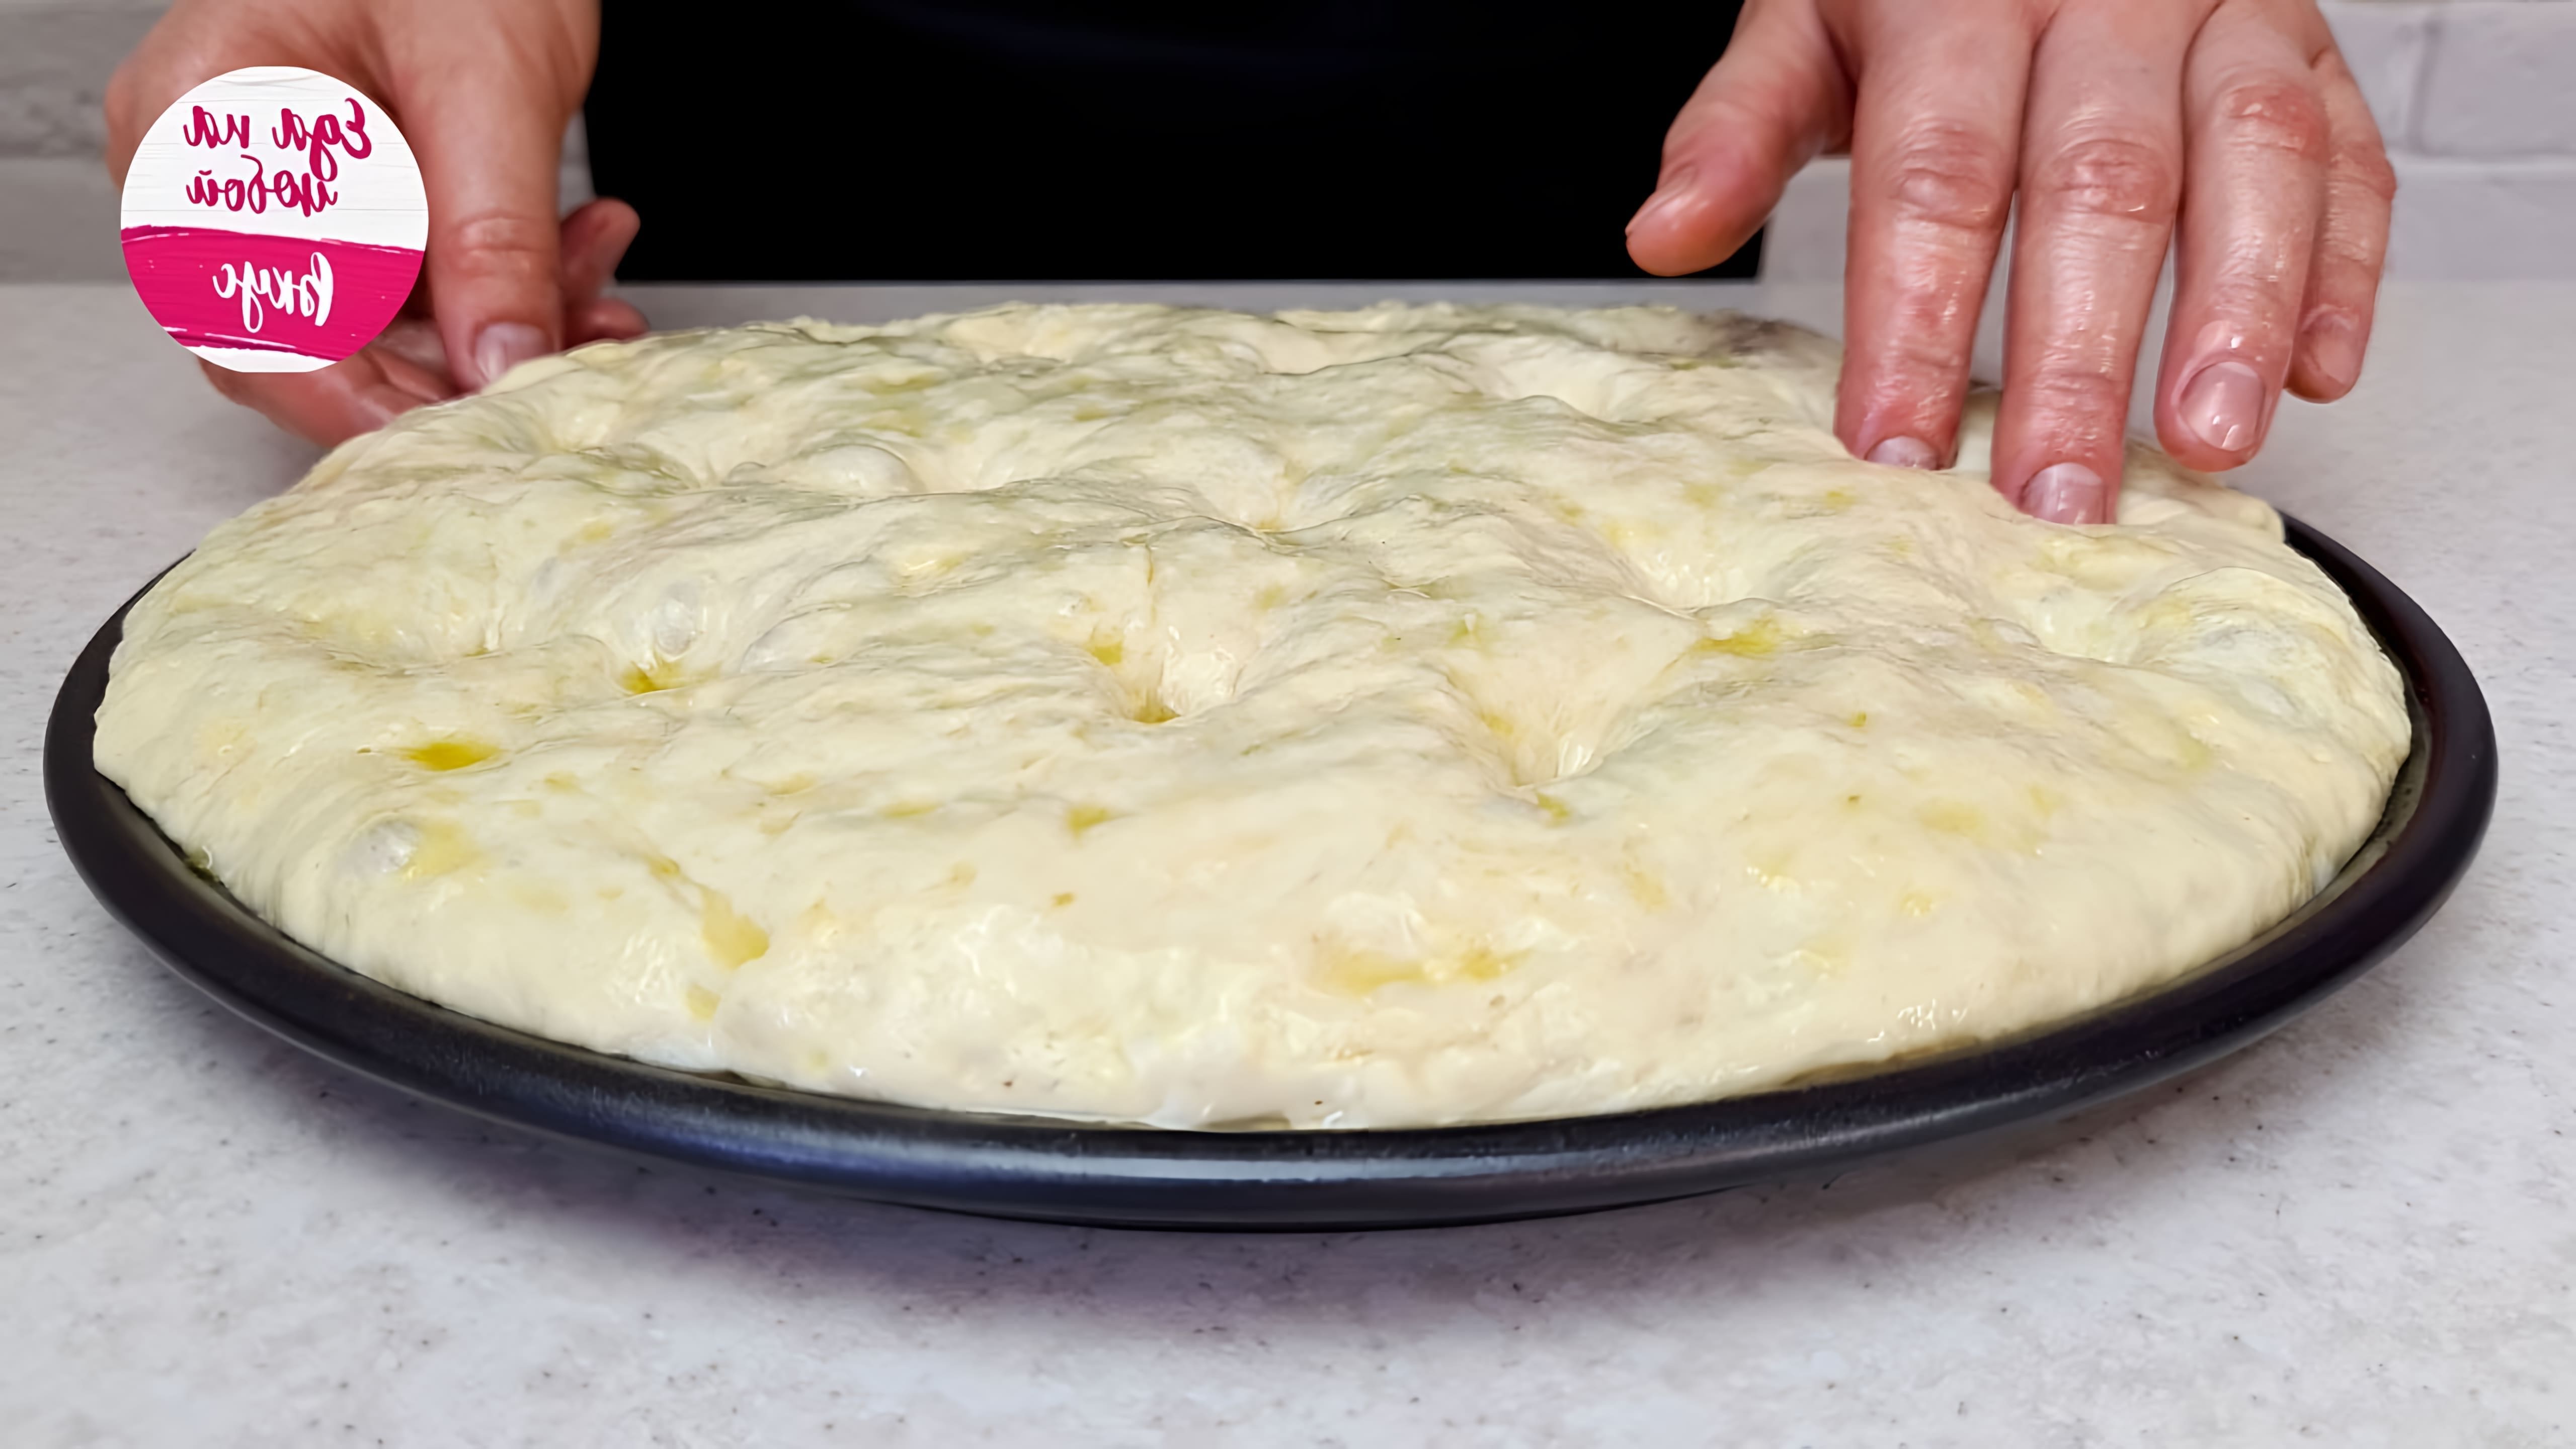 В этом видео Анастасия показывает, как приготовить итальянскую фокаччу